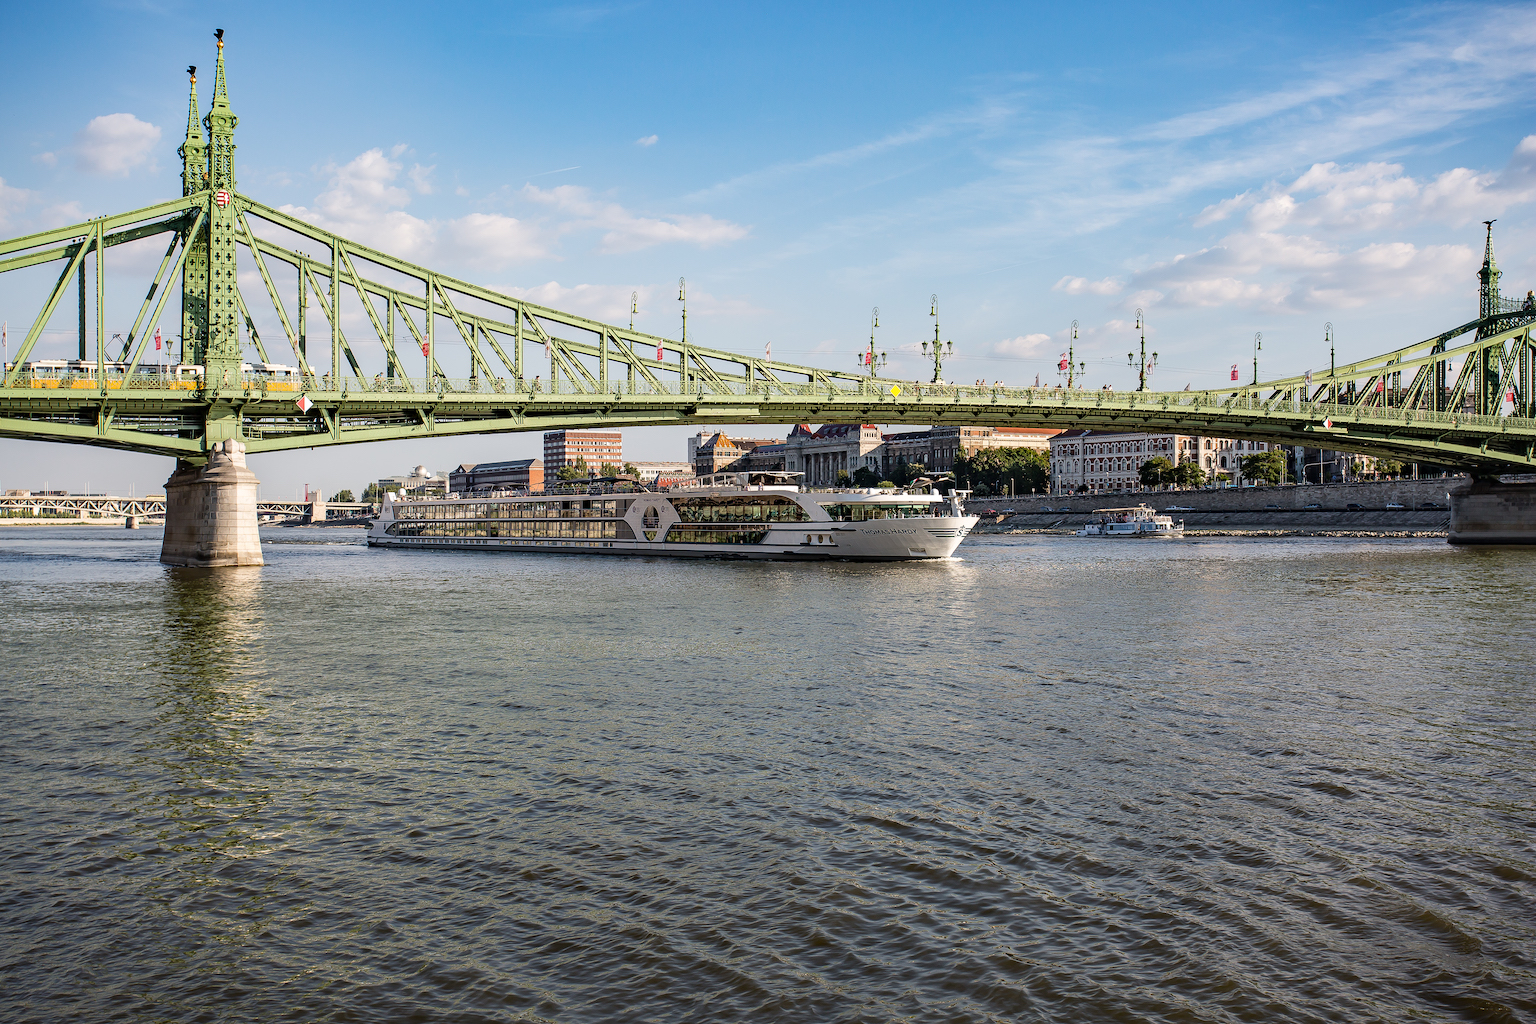 nicko cruises startet ab August mit MS THOMAS HARDY auf der Donau